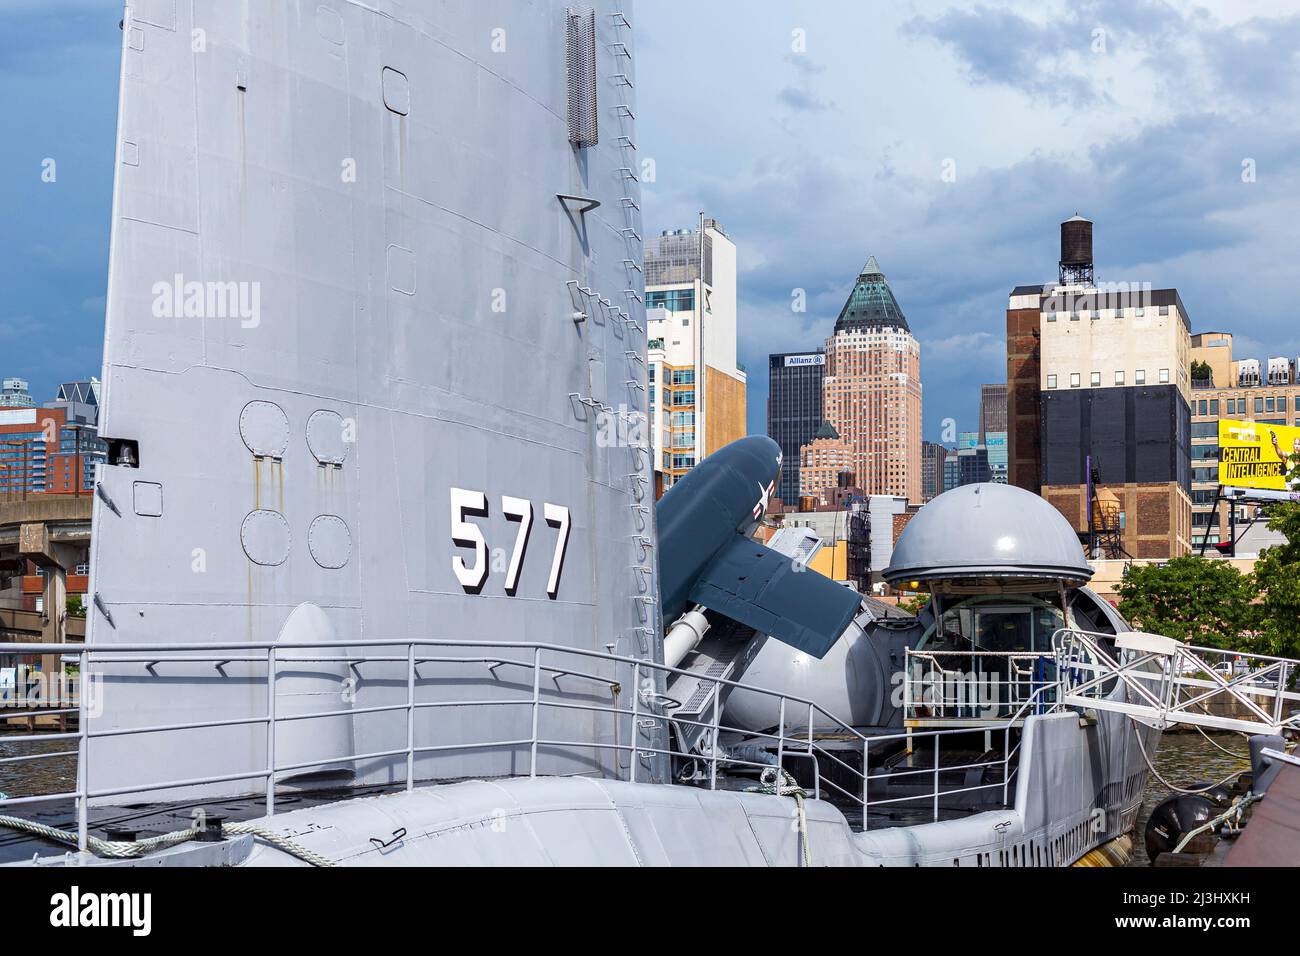 12 AV/W 46 ST, New York City, NY, USA, Cruise Missile U-Boot USS Growler neben dem Intrepid Sea, Air & Space Museum - ein amerikanisches Militär- und maritimes Geschichtsmuseum zeigt den Flugzeugträger USS Intrepid. Stockfoto